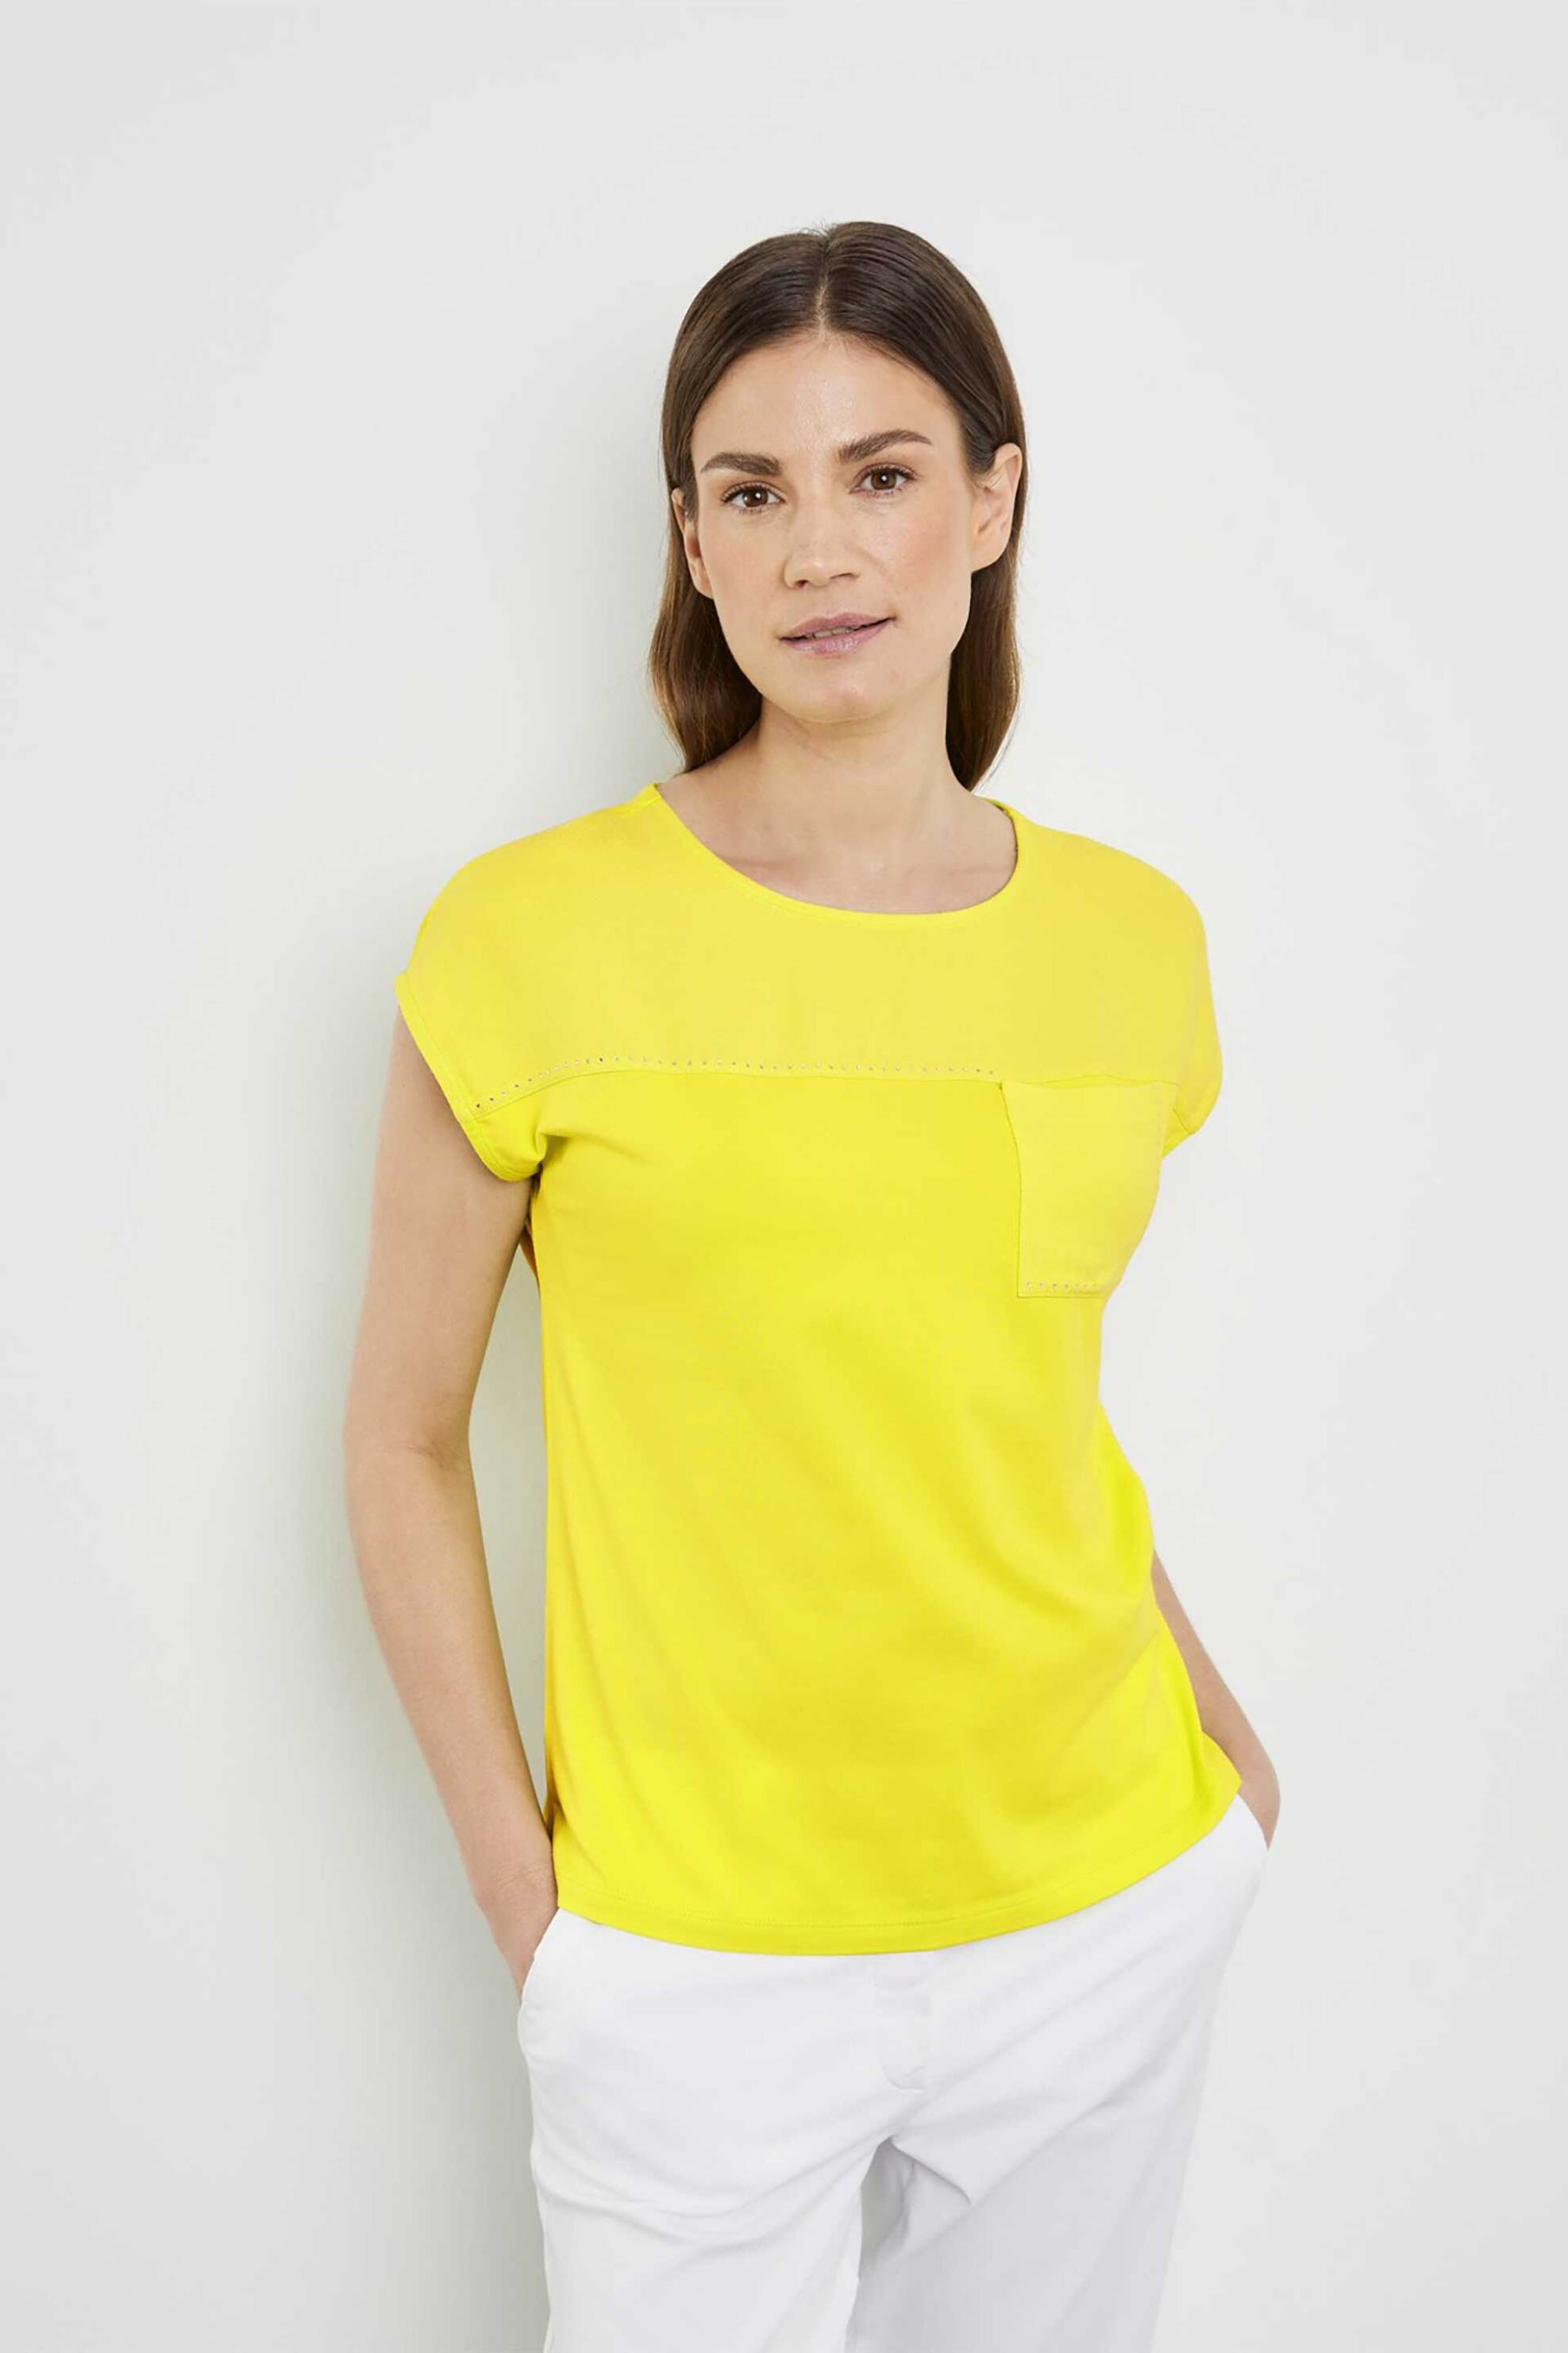 Γυναικεία Ρούχα & Αξεσουάρ > Γυναικεία Ρούχα > Γυναικεία Τοπ > Γυναικεία T-Shirts Gerry Weber γυναικείο T-shirt με τσέπη και διακοσμητικές πέτρες Casual Fit - 270043-44042 Κίτρινο